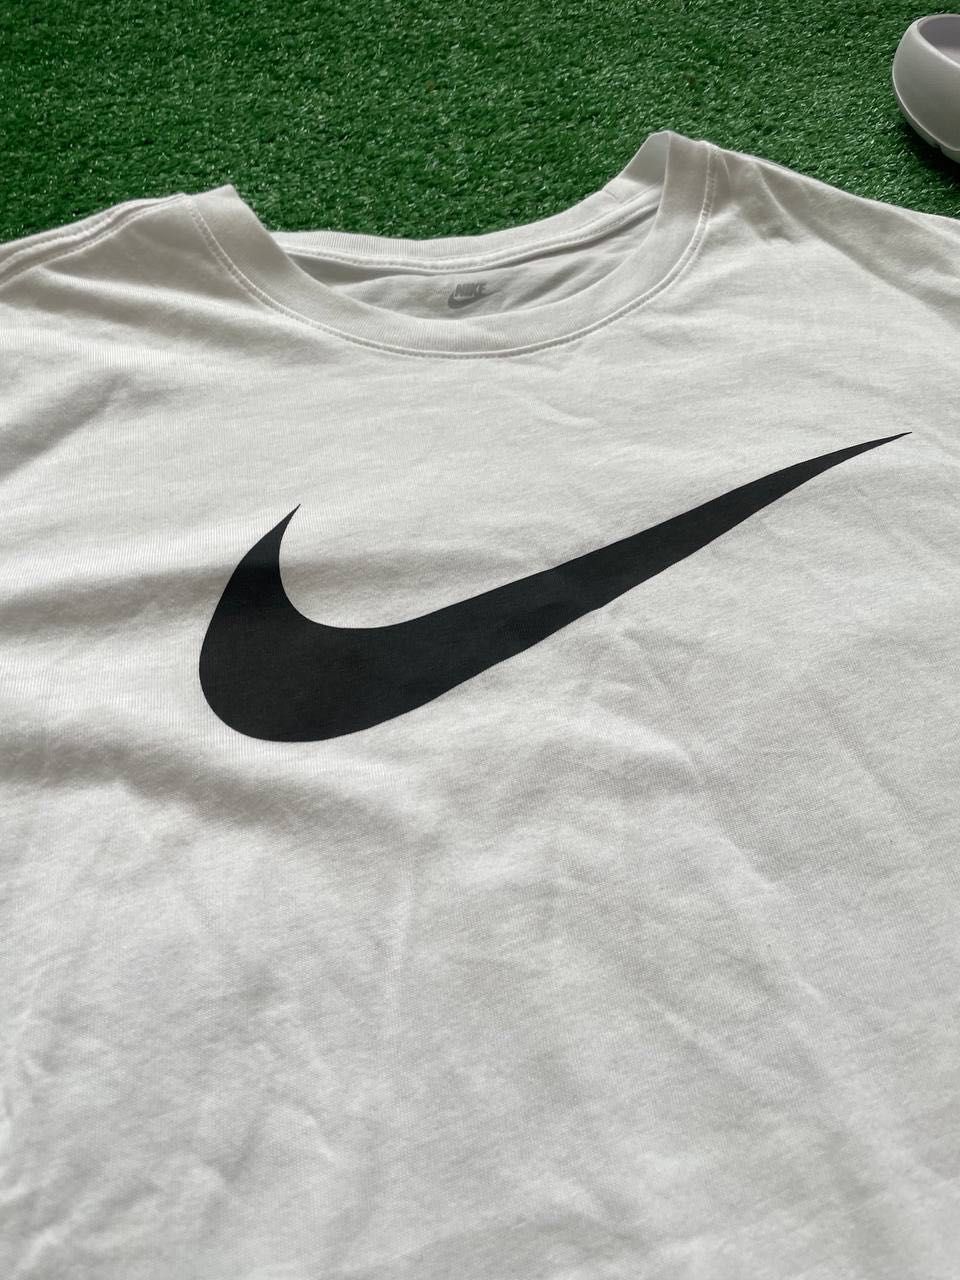 Футболка Nike |Оригінал| L,XL